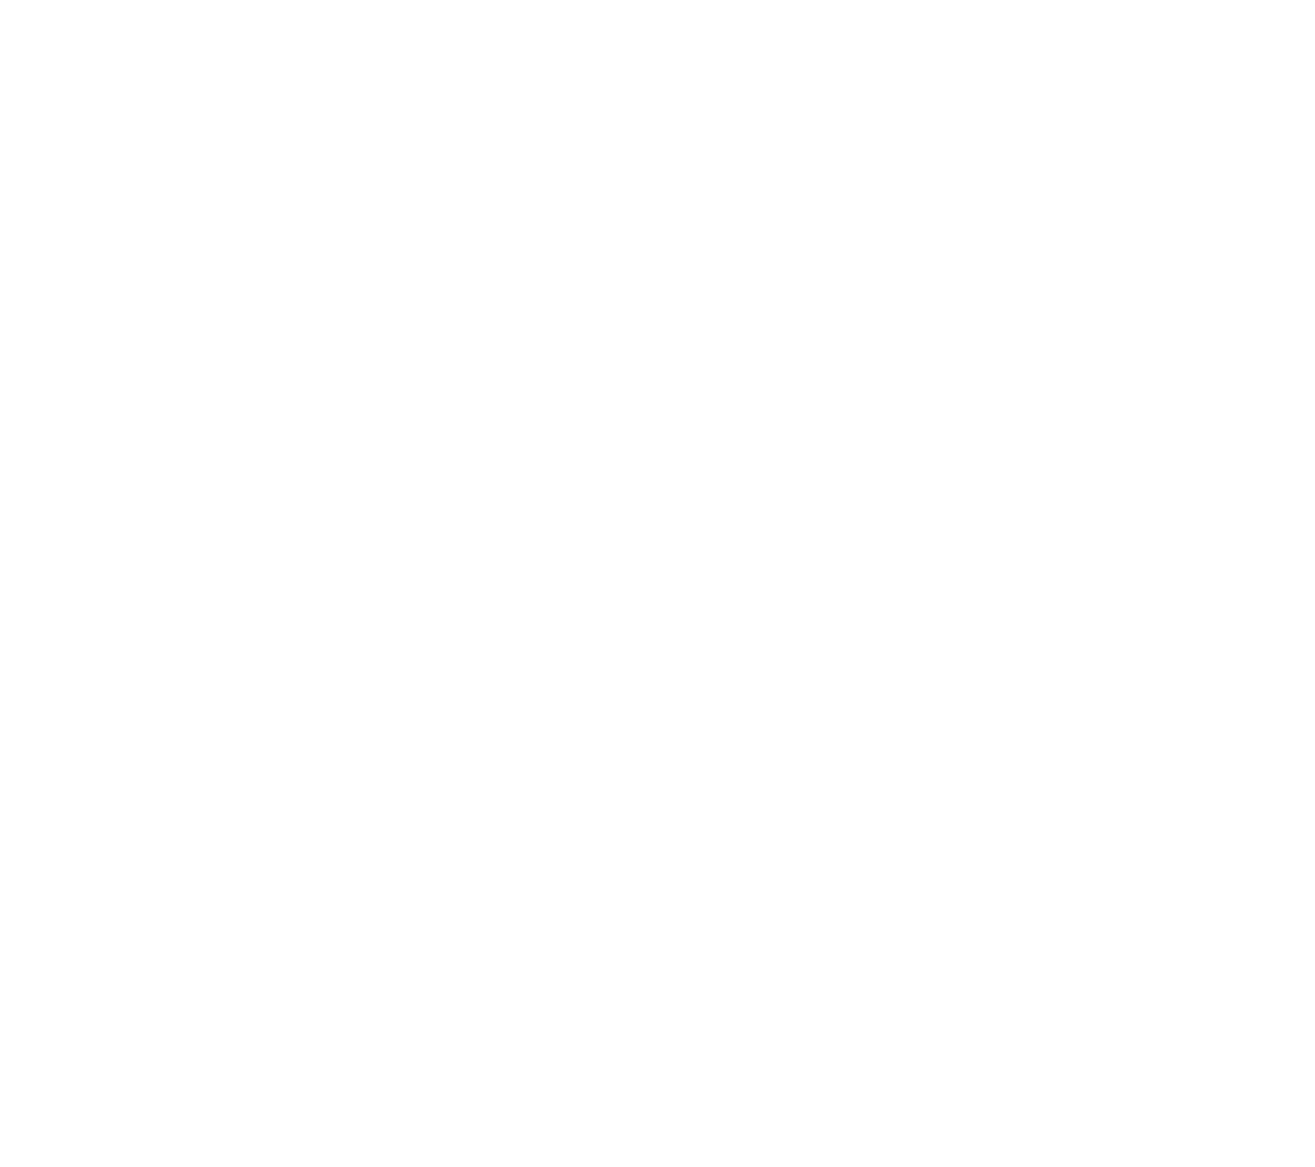 Weißer Schriftzug auf bleuen untergrund: Björn Becker der Innobilienbewerter